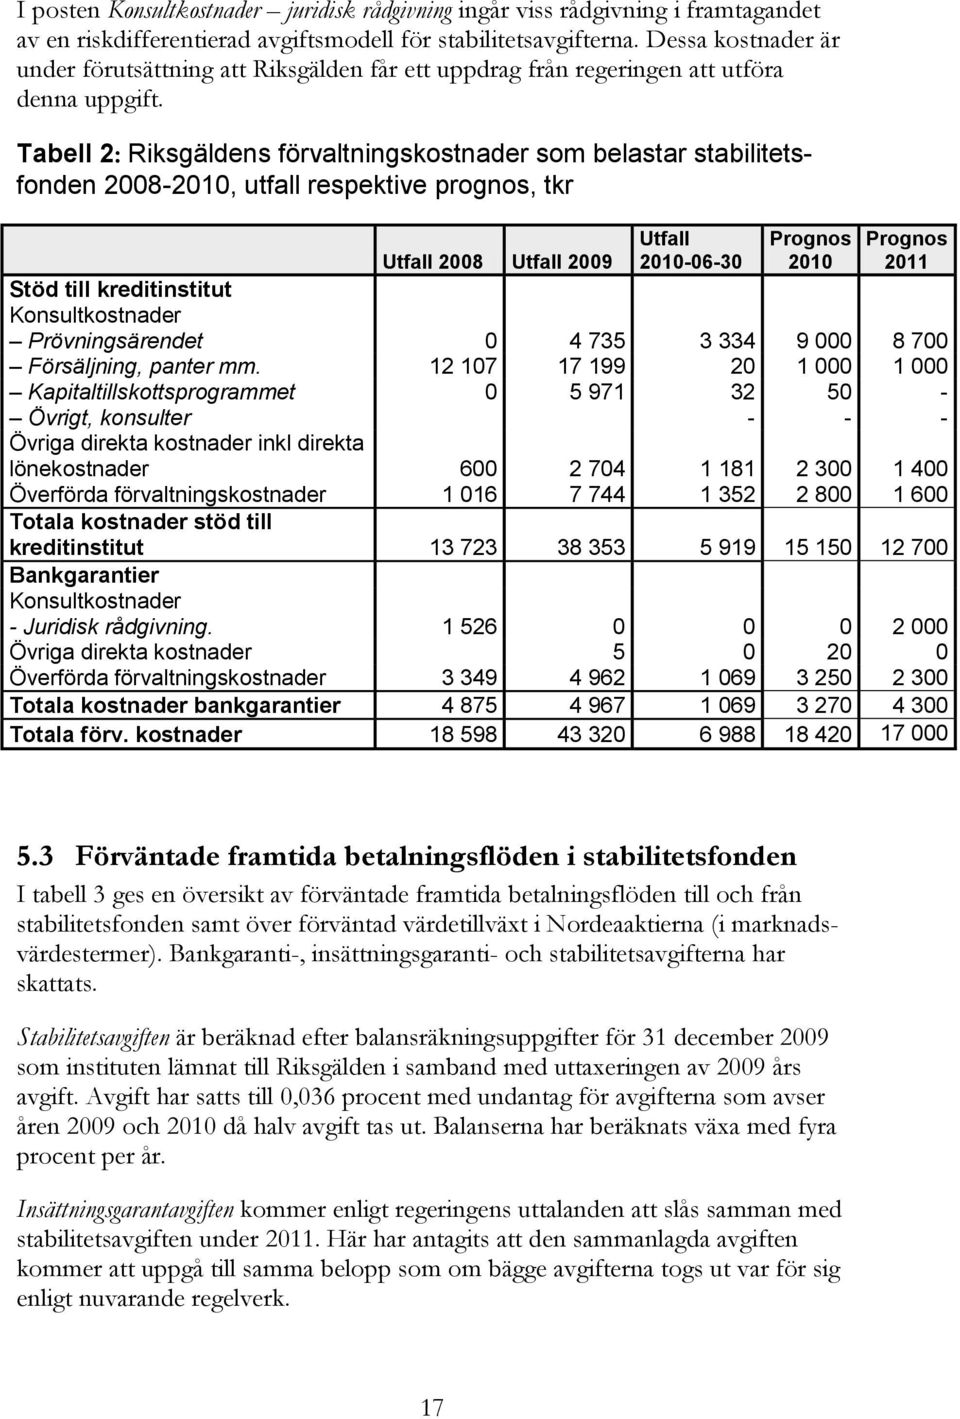 Tabell 2: Riksgäldens förvaltningskostnader som belastar stabilitetsfonden 2008-2010, utfall respektive prognos, tkr Utfall 2010-06-30 Prognos 2010 Prognos 2011 Utfall 2008 Utfall 2009 Stöd till